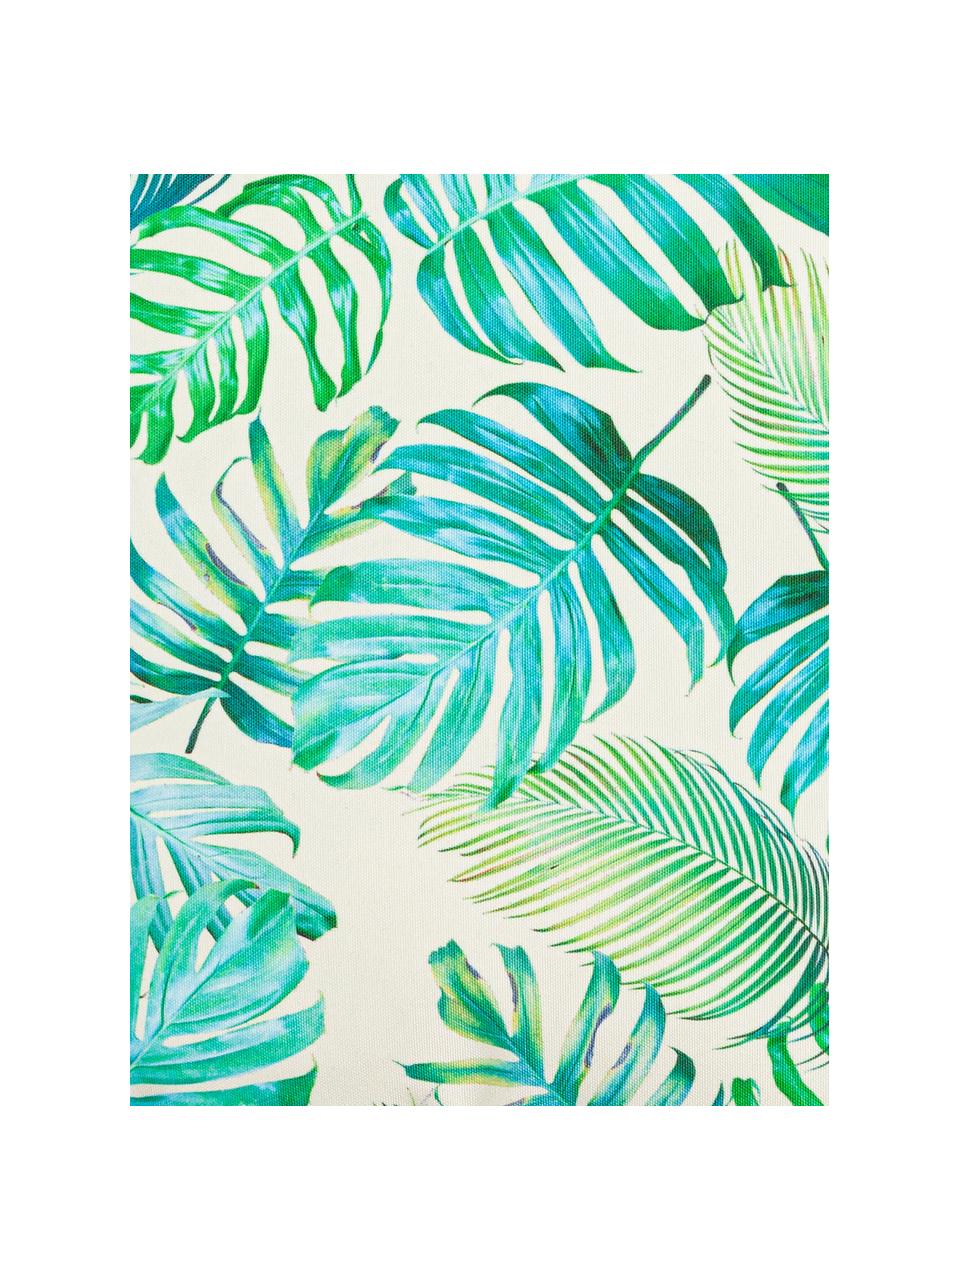 Venkovní polštář s motivem listů Madeira, s výplní, 100 % polyester, Světle bílá, odstíny modré, odstíny zelené, Š 45 cm, D 45 cm